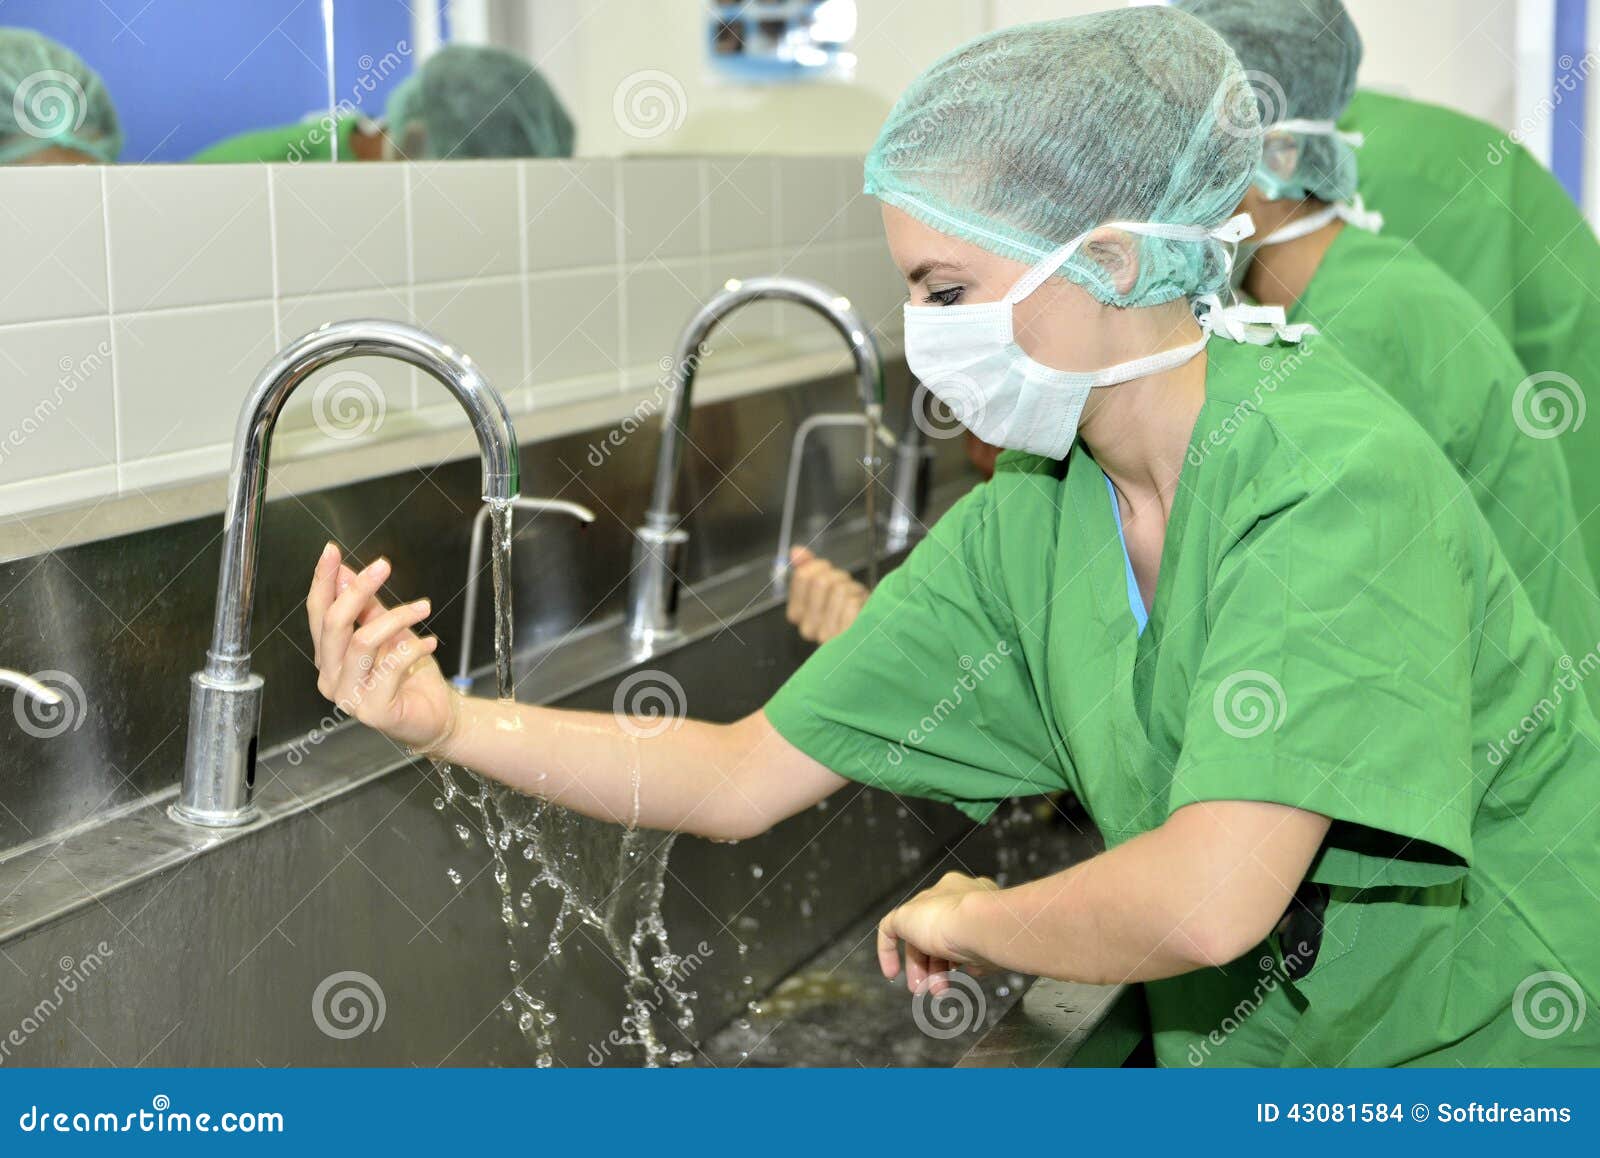 Гигиена для медицинских вузов. Гигиена в медицине. Мытье рук в хирургии. Мытье рук в операционной.